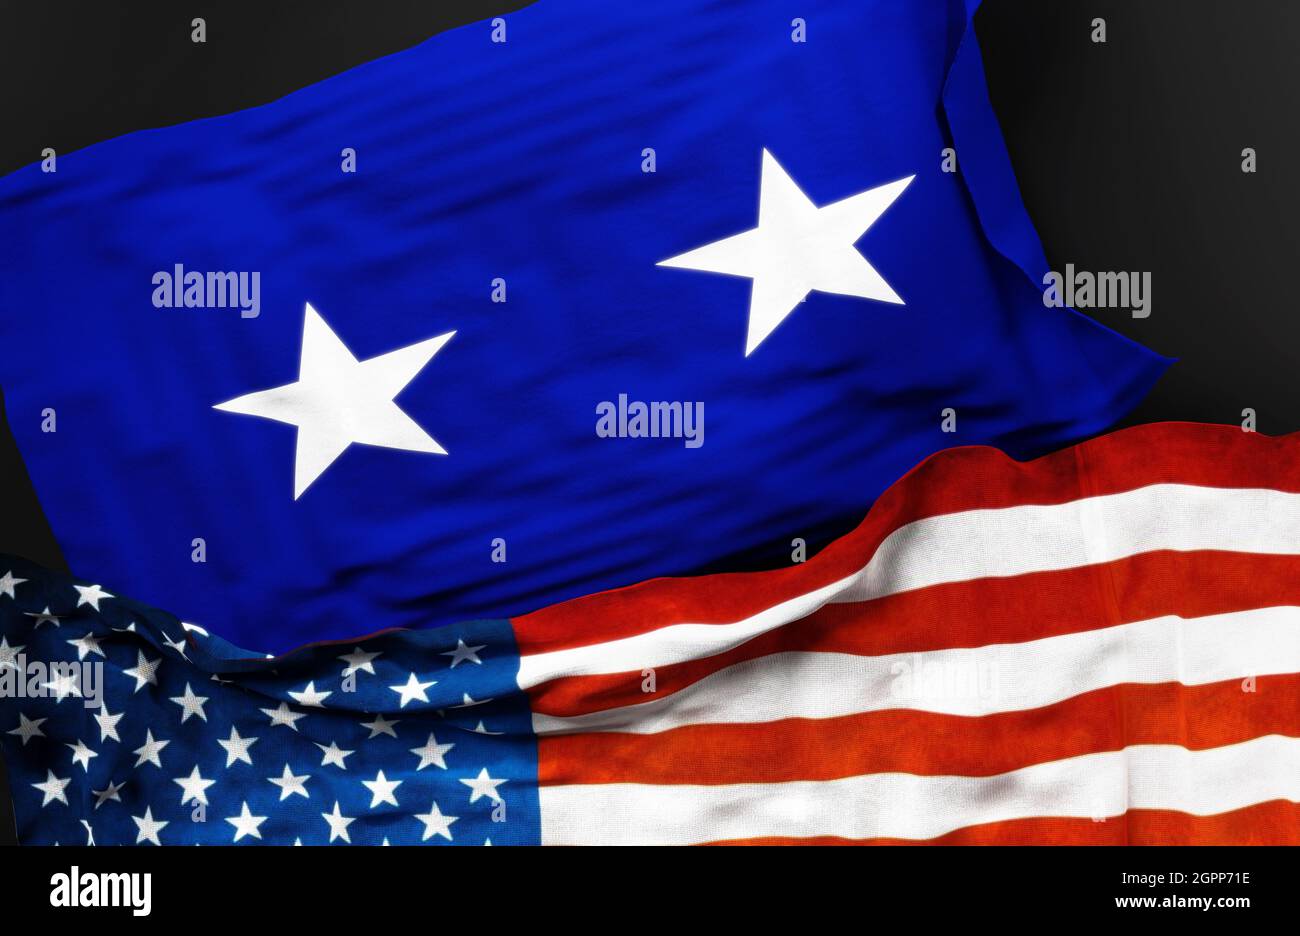 Flagge eines US Air Force Major Generals zusammen mit einer Flagge der Vereinigten Staaten von Amerika als Symbol der Einheit zwischen ihnen, 3d-Illustration Stockfoto